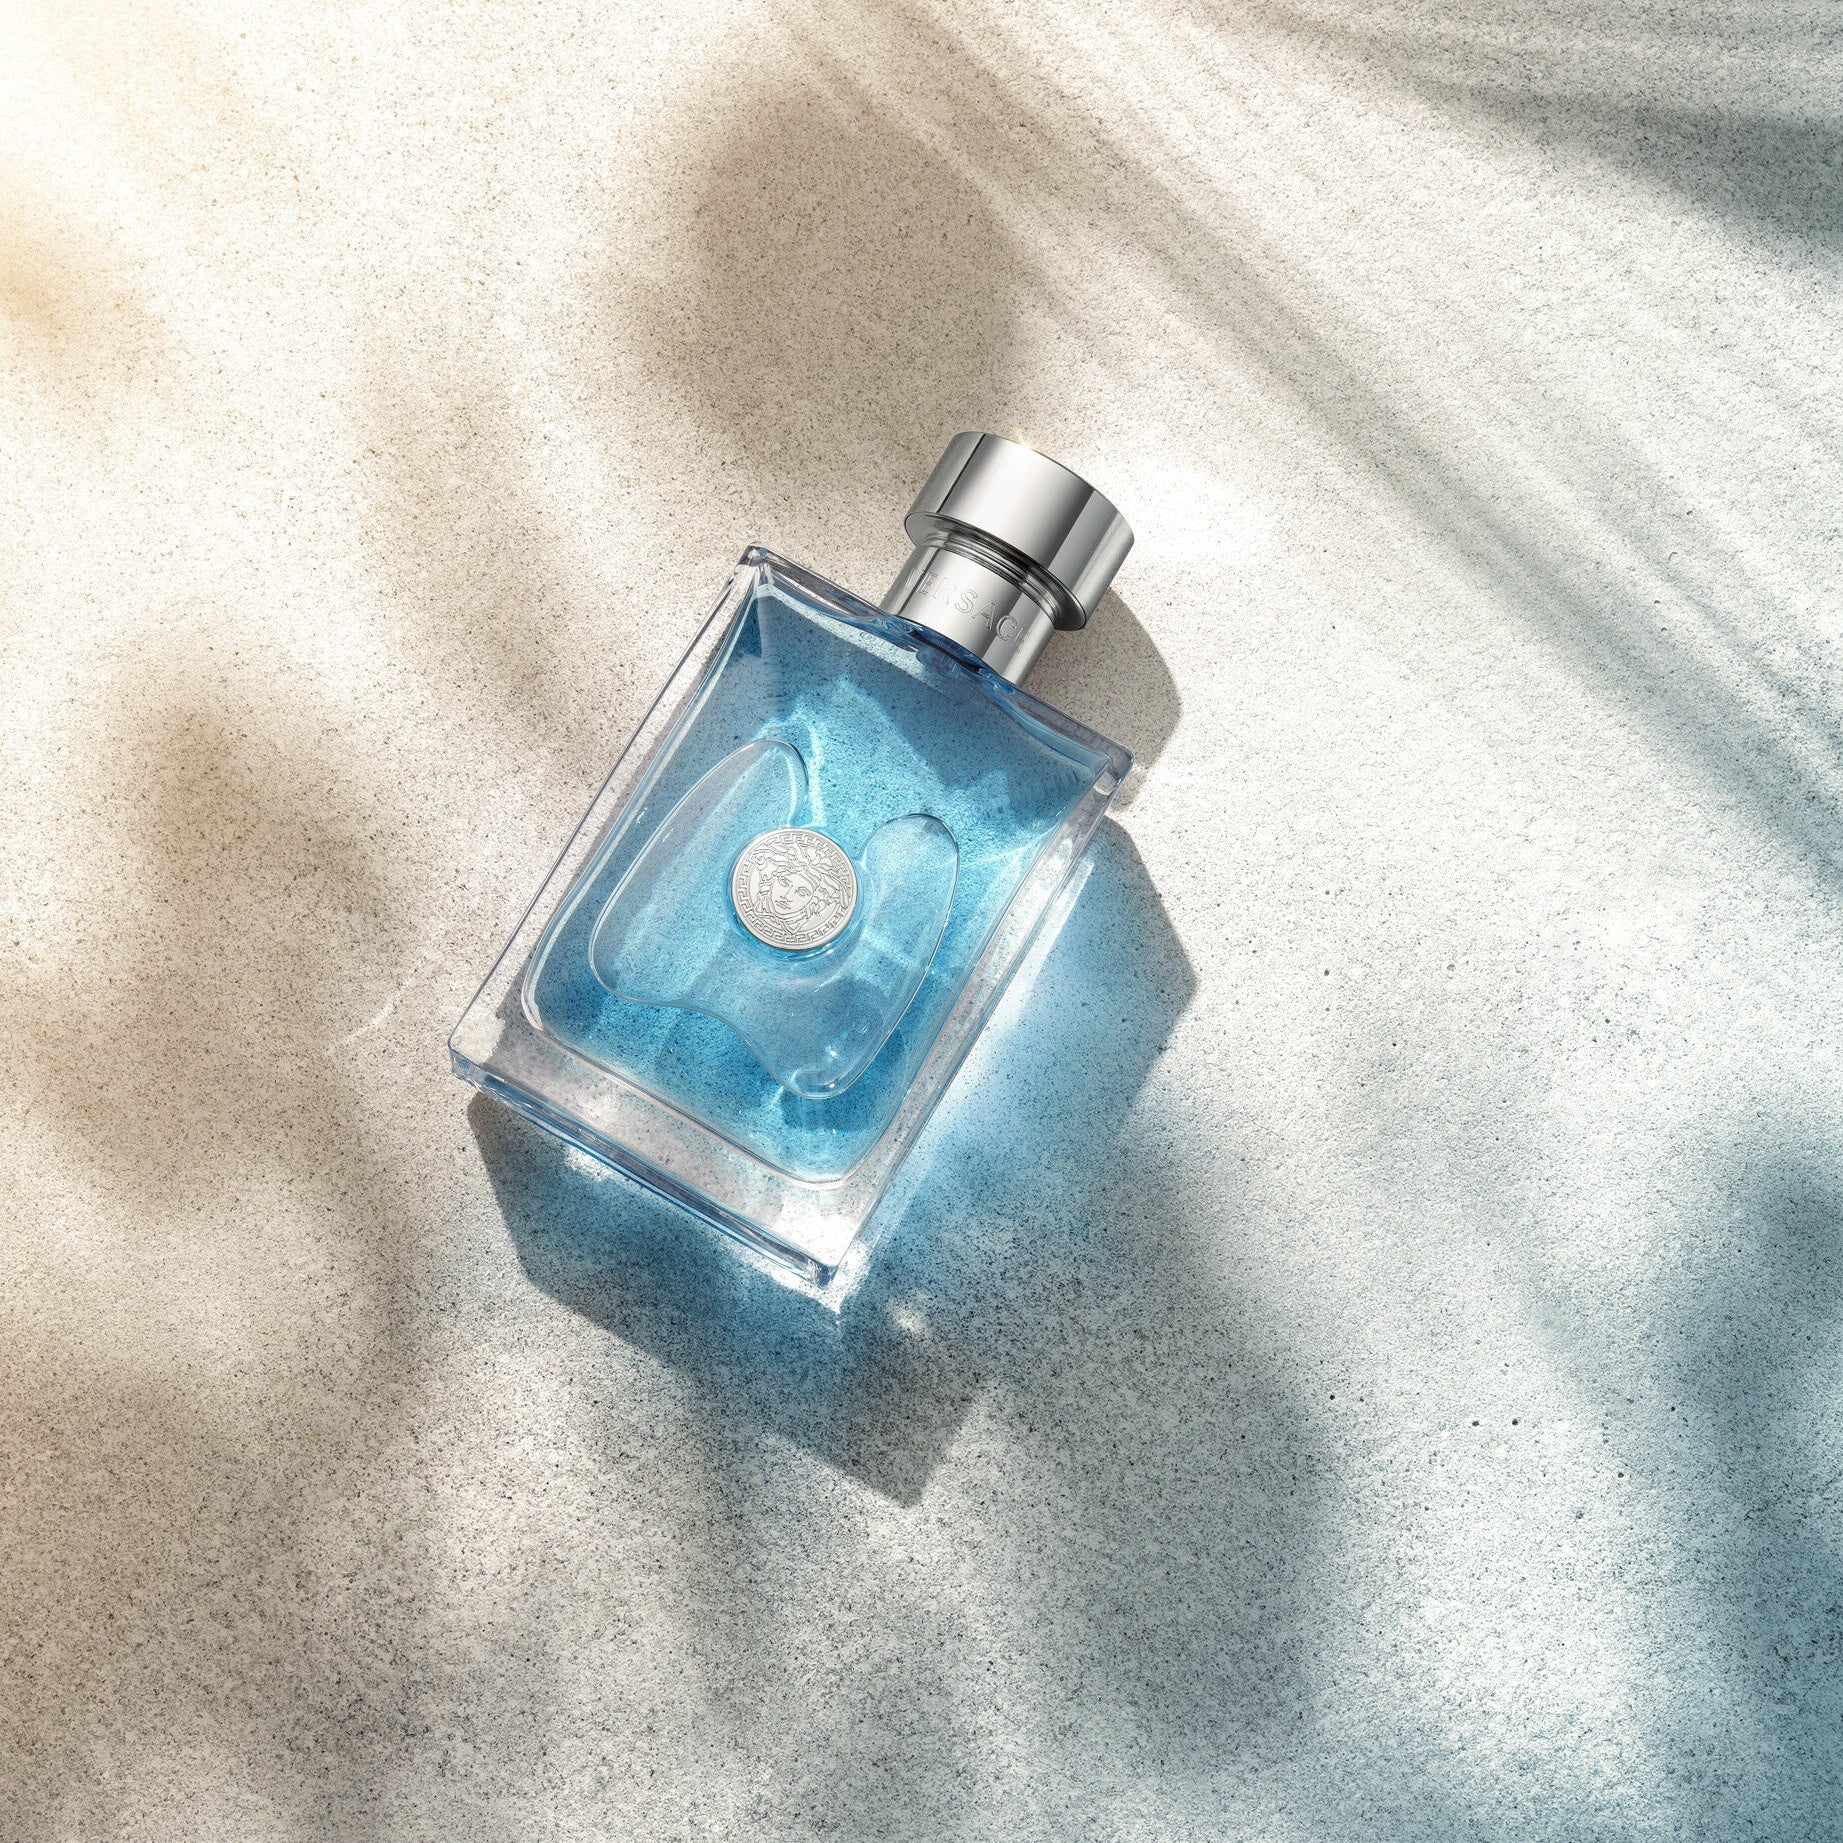 Versace Pour Homme EDT Travel Set | My Perfume Shop Australia